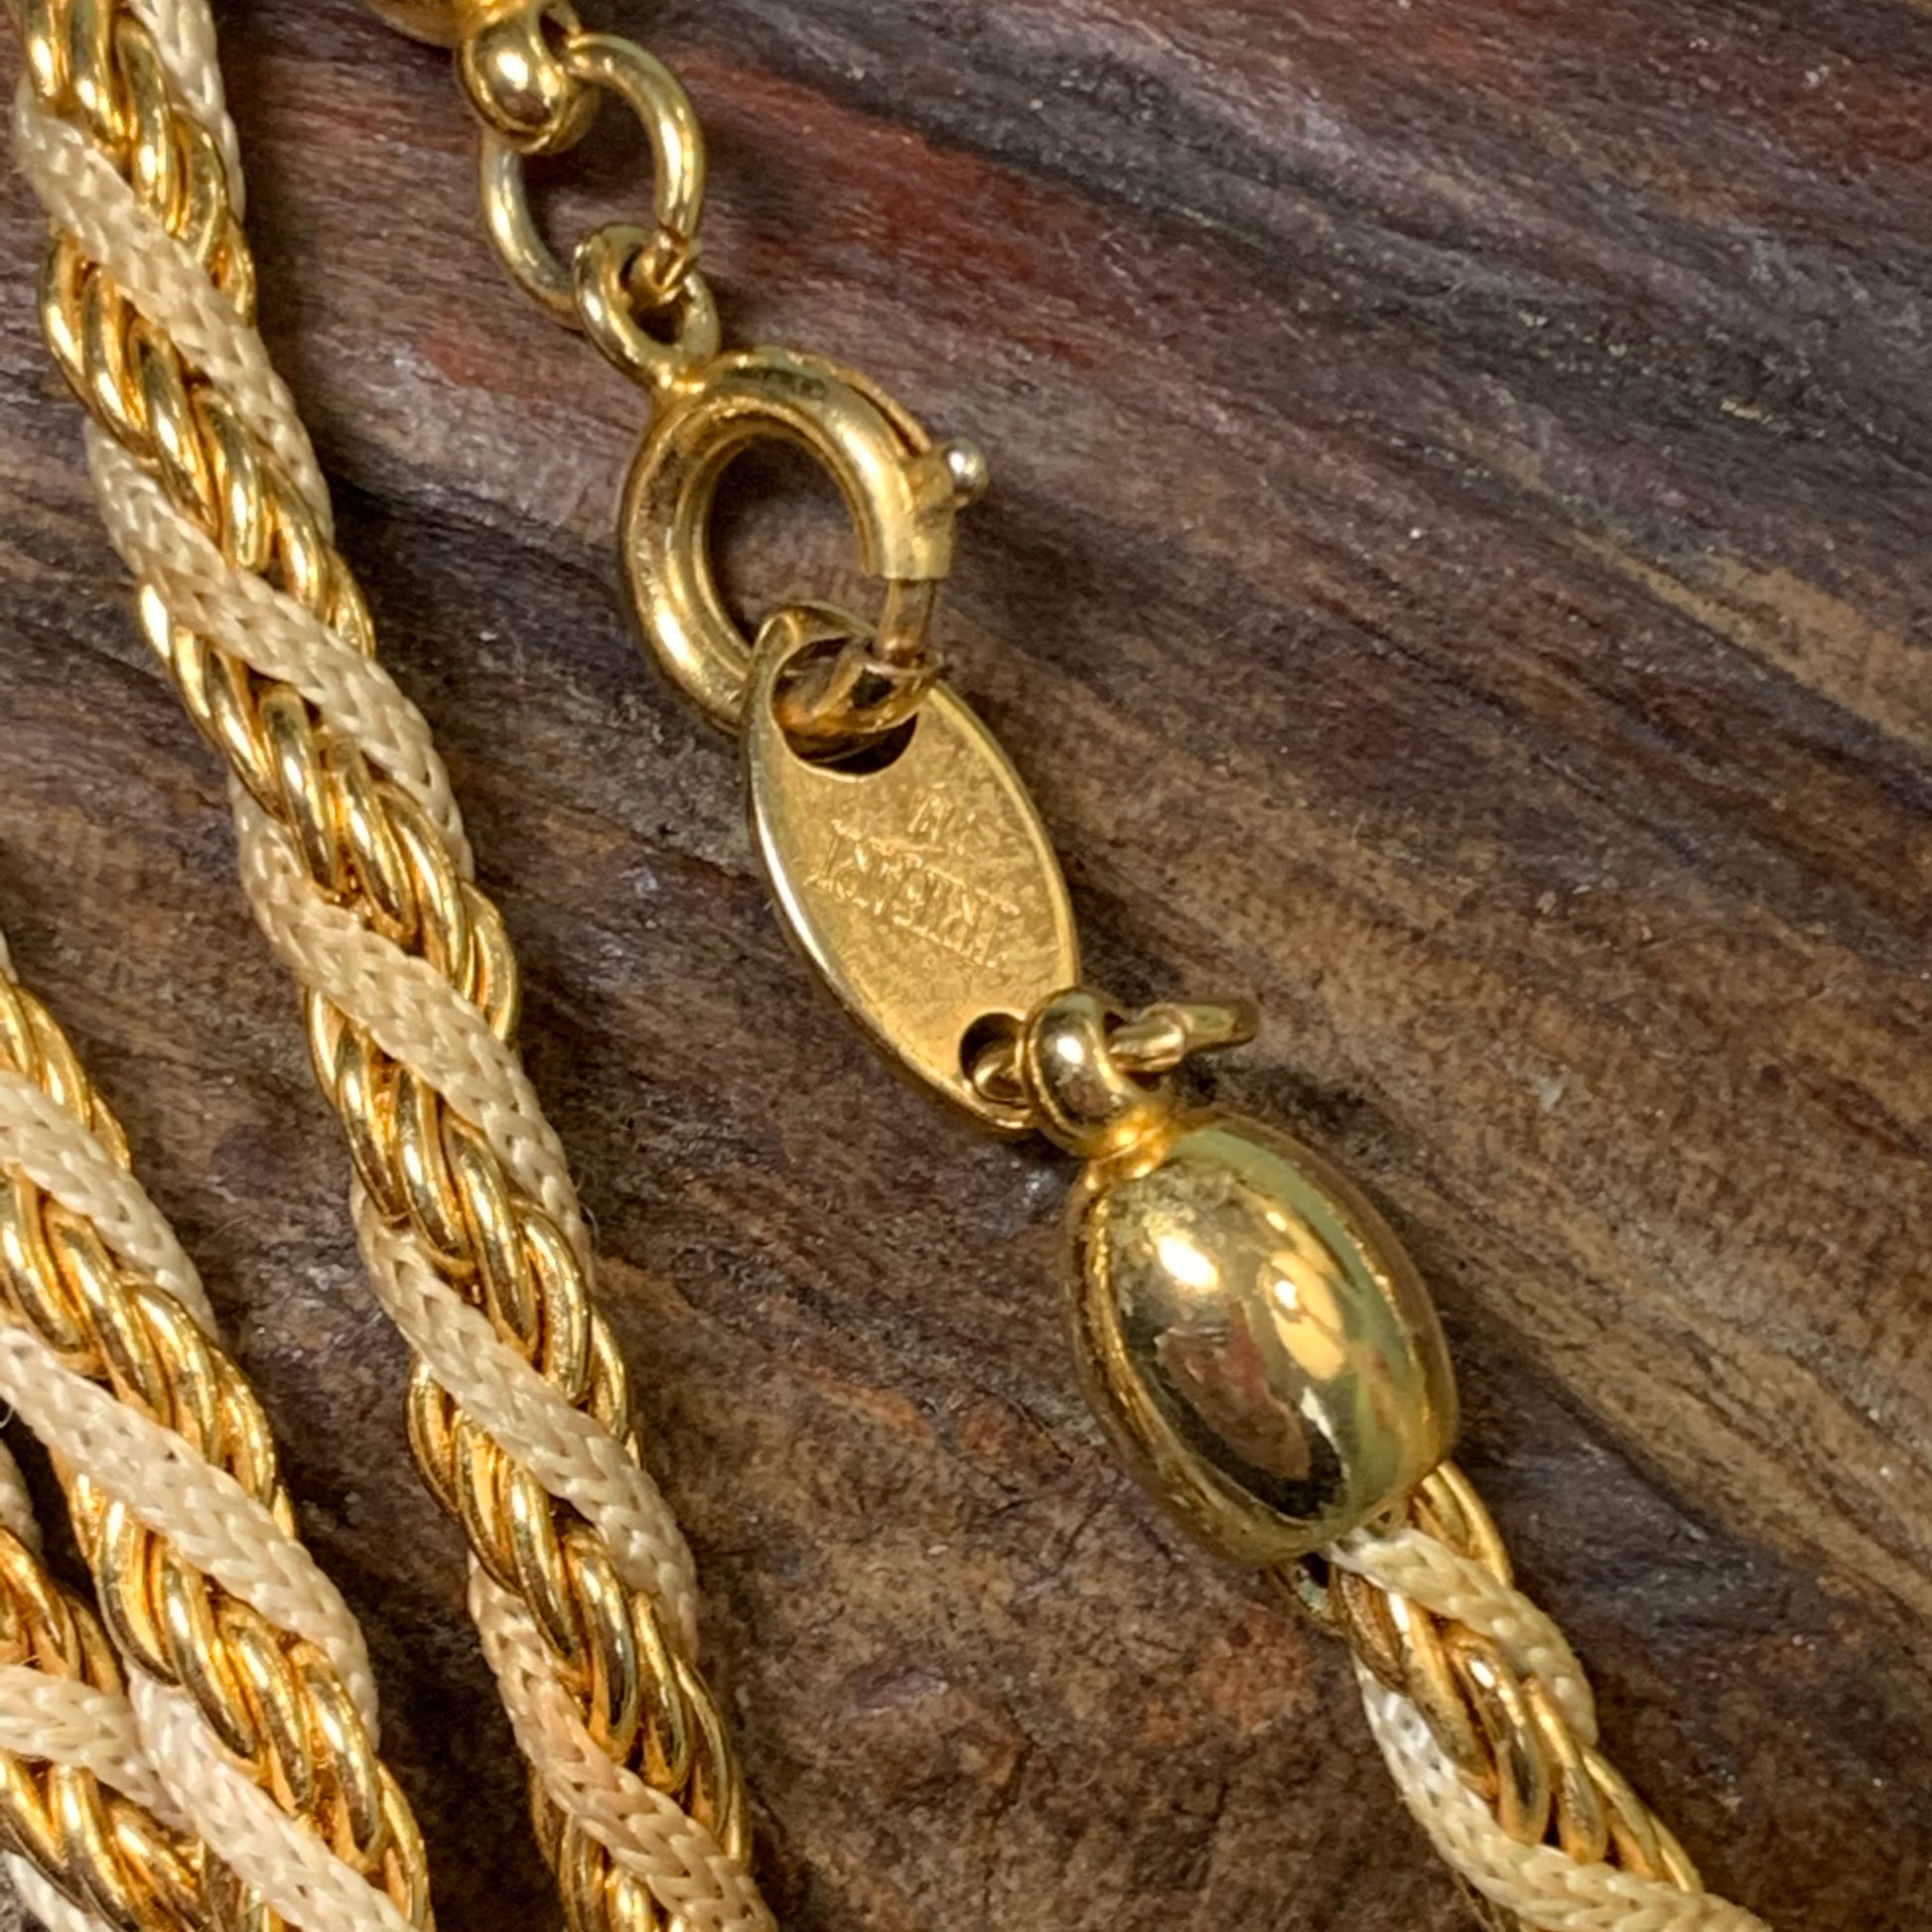 Vintage Trifari TM Necklace Gold Tone Endless Necklace